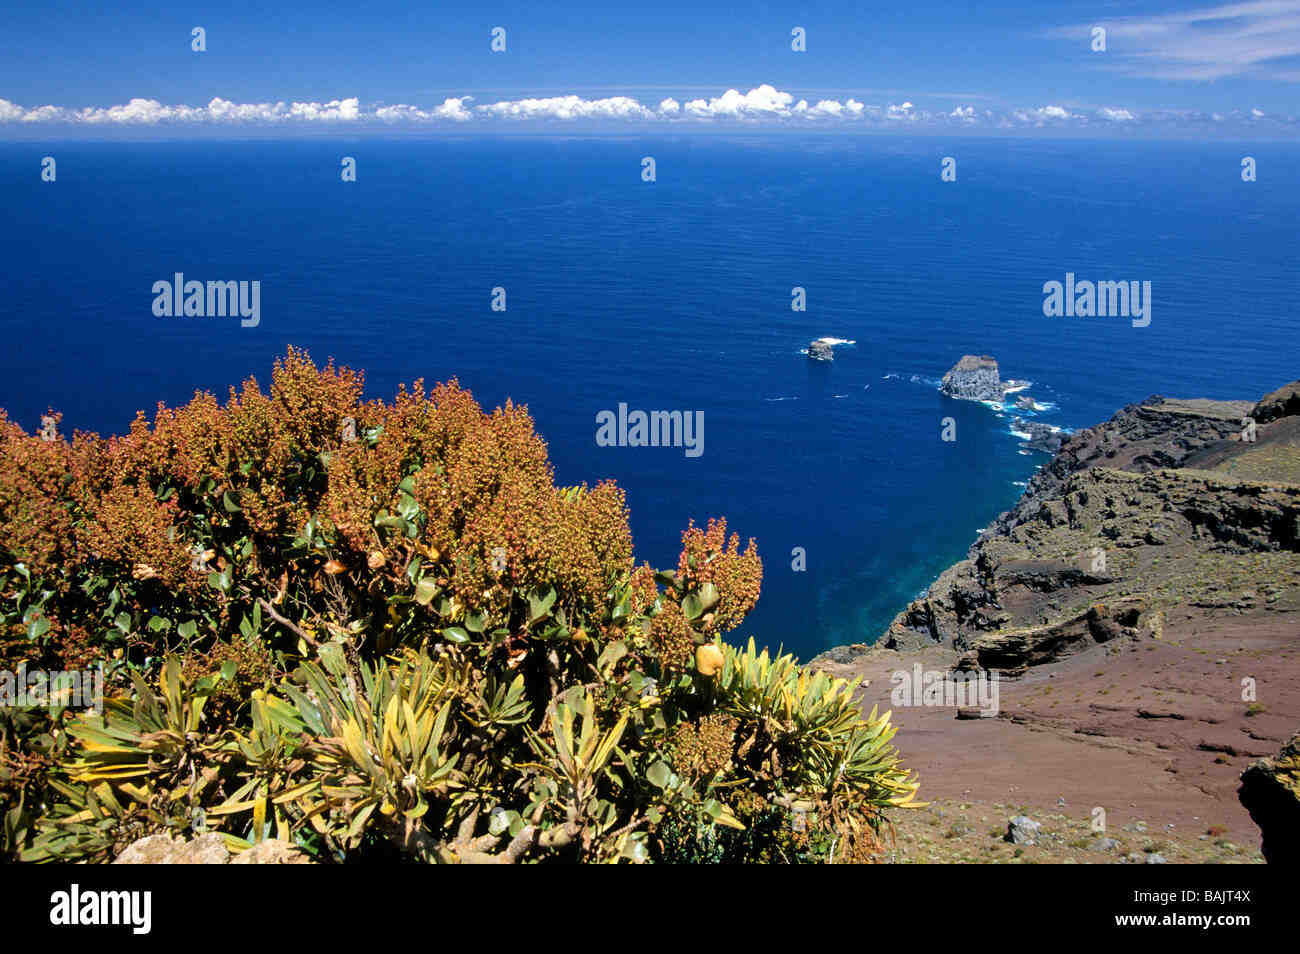 Quelle est la plus petite île des Canaries ?